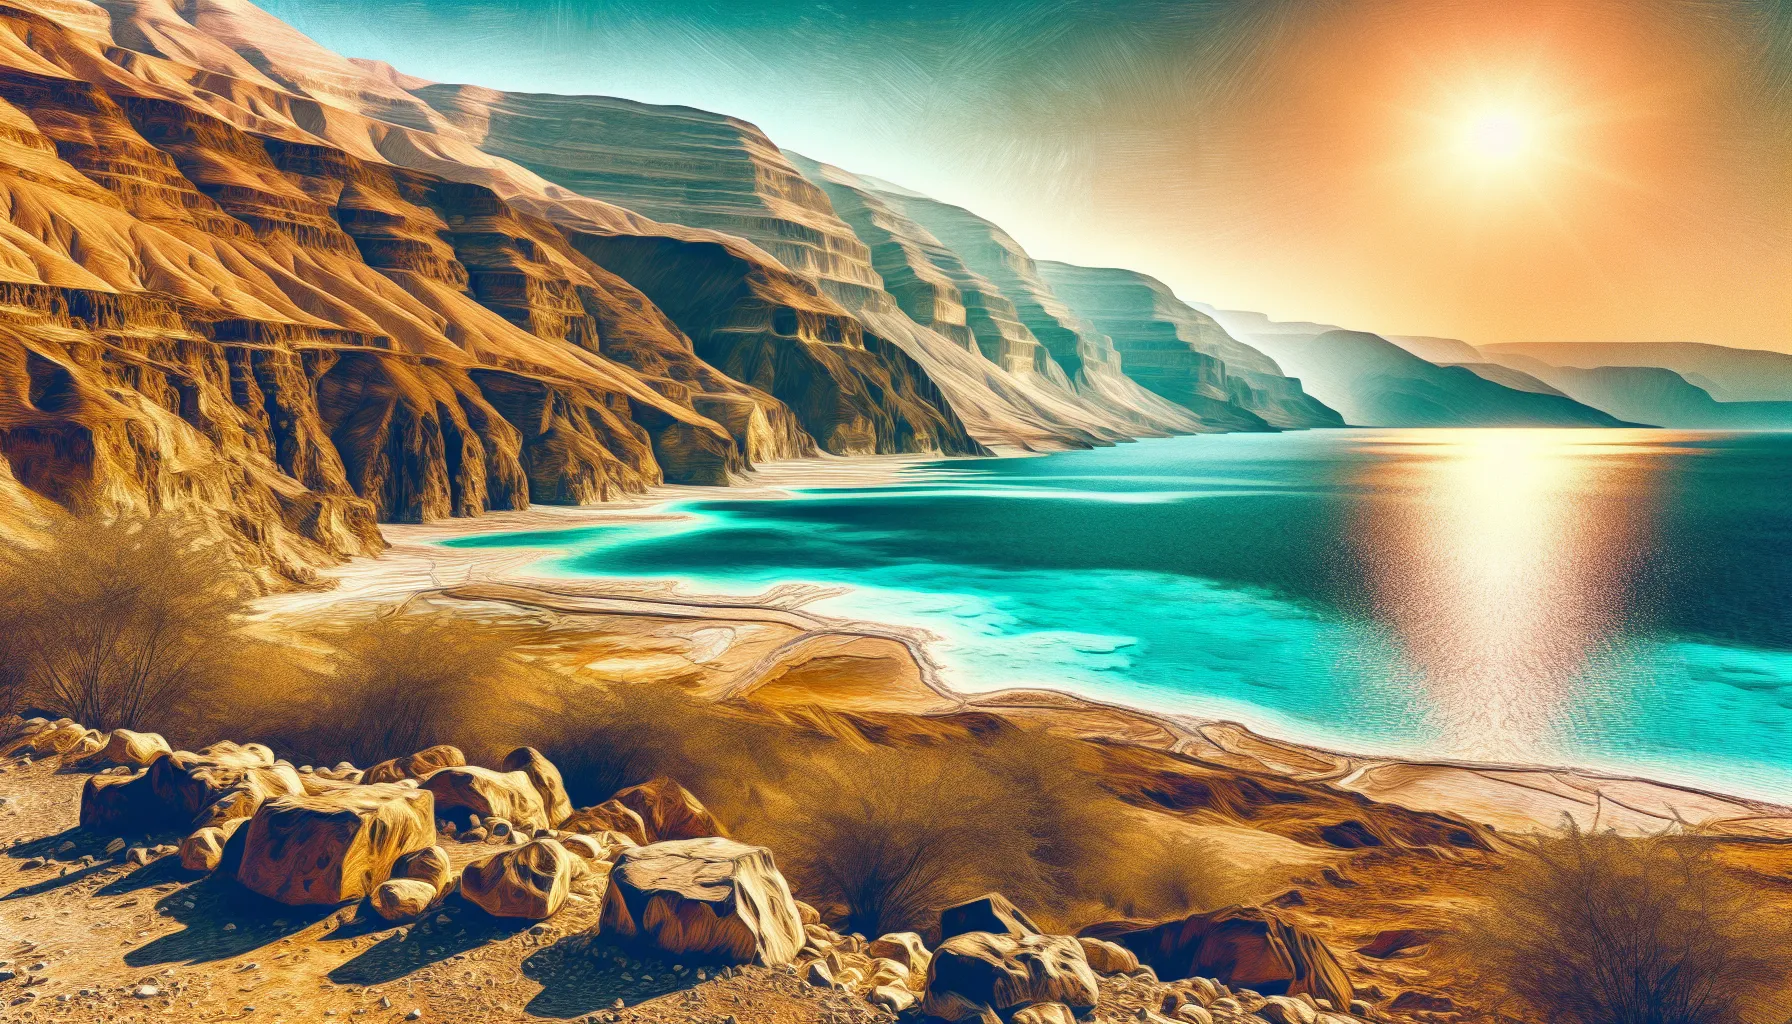 O Mar Morto é uma das maravilhas geográficas e históricas mais fascinantes do mundo. Localizado entre Israel, Jordânia e Cisjordânia, ele é conhecido por sua alta concentração de sal e minerais, o que o torna um dos corpos de água mais salgados do planeta.

Sua localização geográfica é igualmente impressionante. Situado no ponto mais baixo da Terra